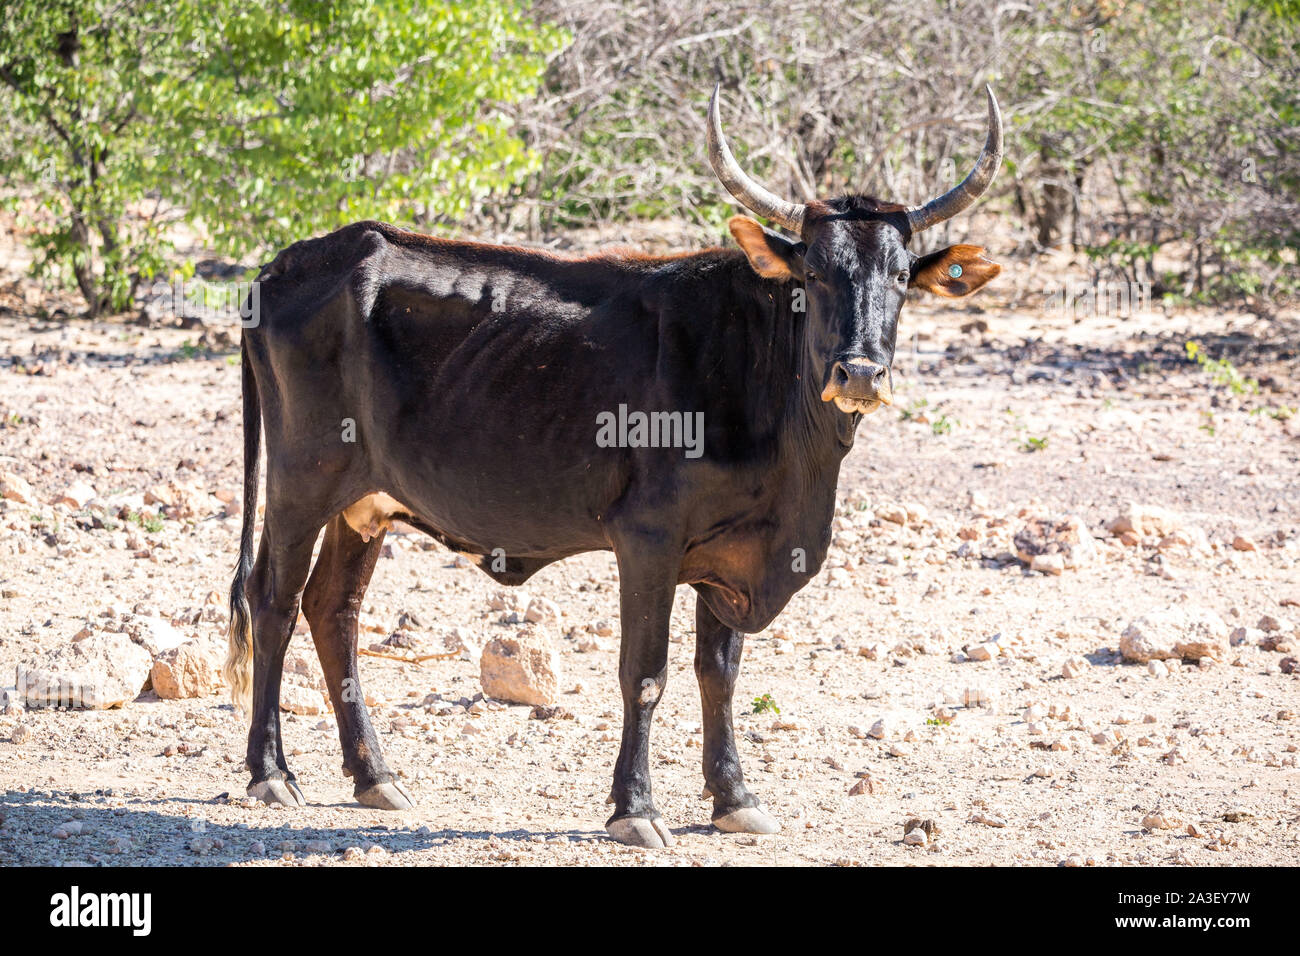 Une vache noire avec de longues cornes debout sur un paysage aride et chaud, la Namibie, l'Afrique Banque D'Images